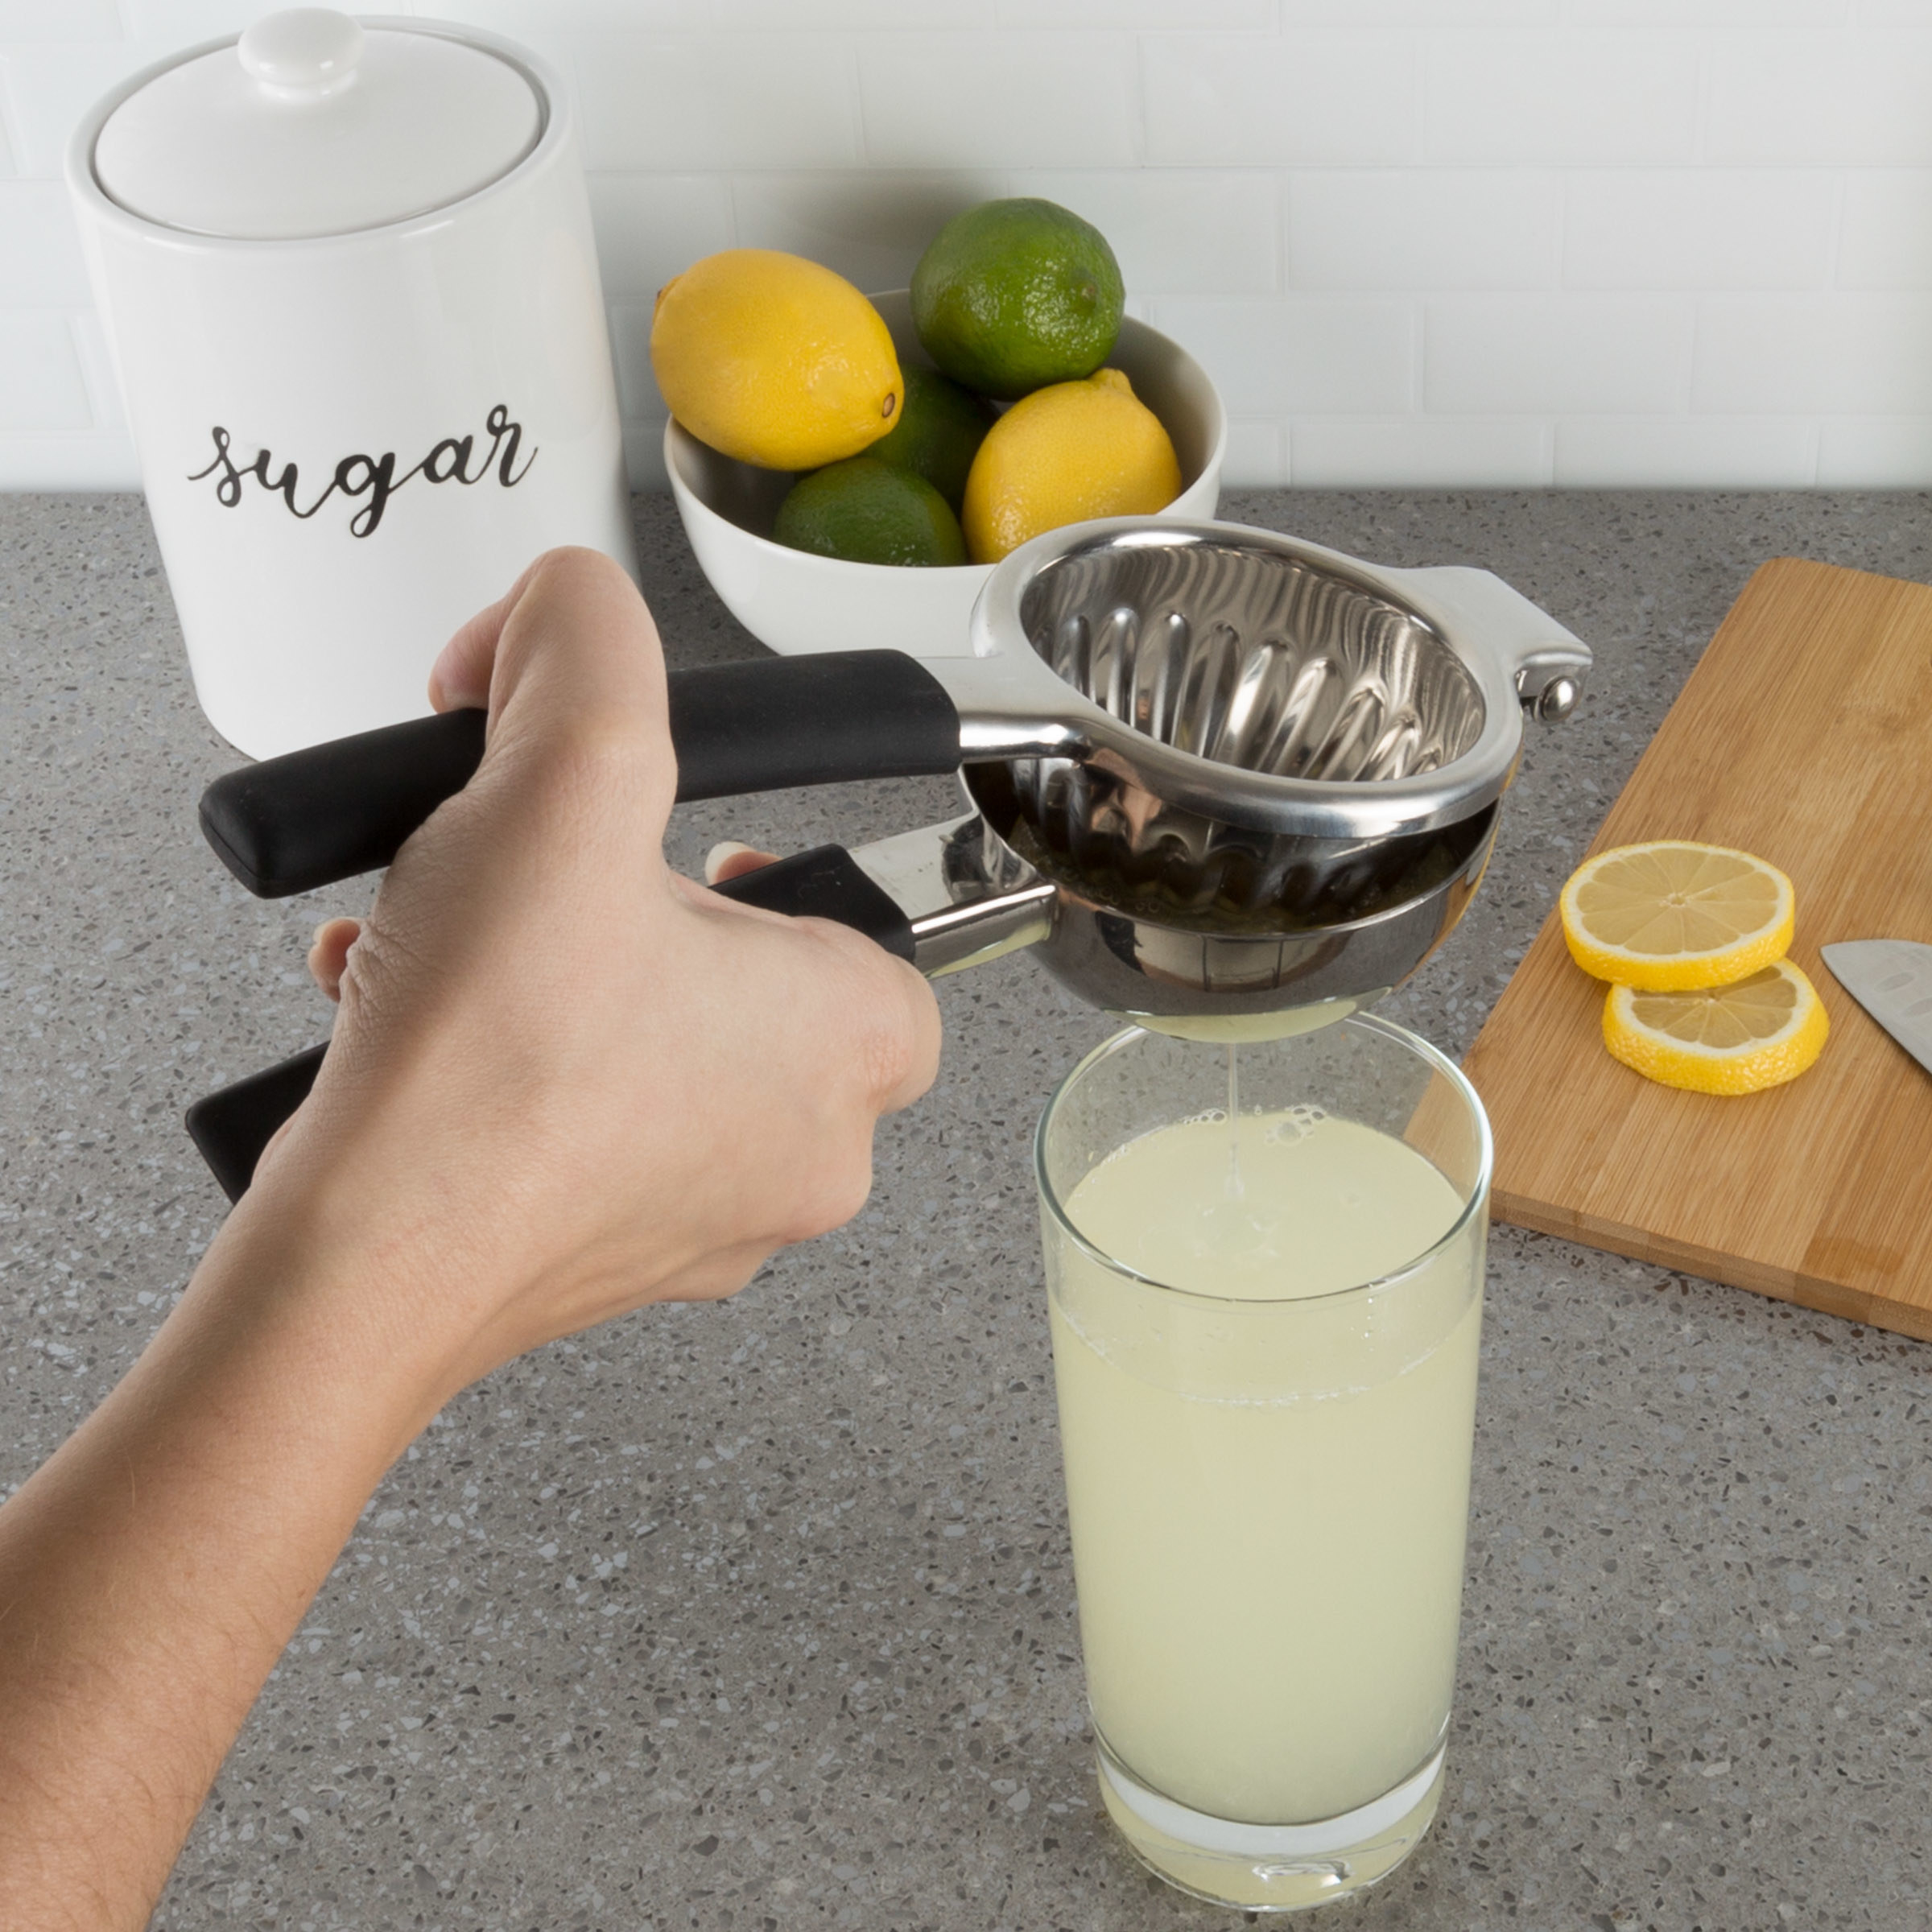 stainless steel juicer juicing lemon